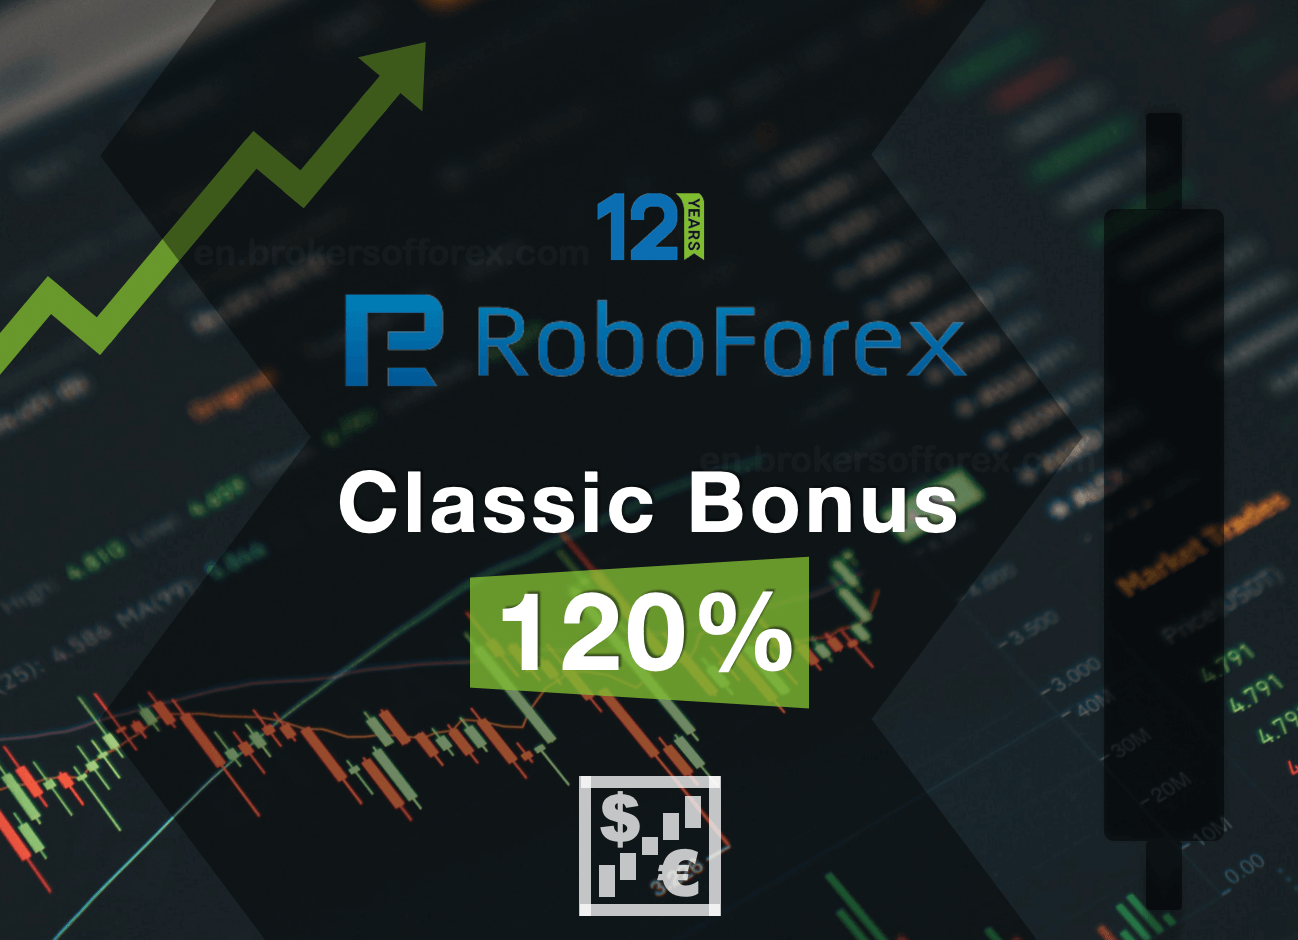 RoboForex 120% Deposit Bonus